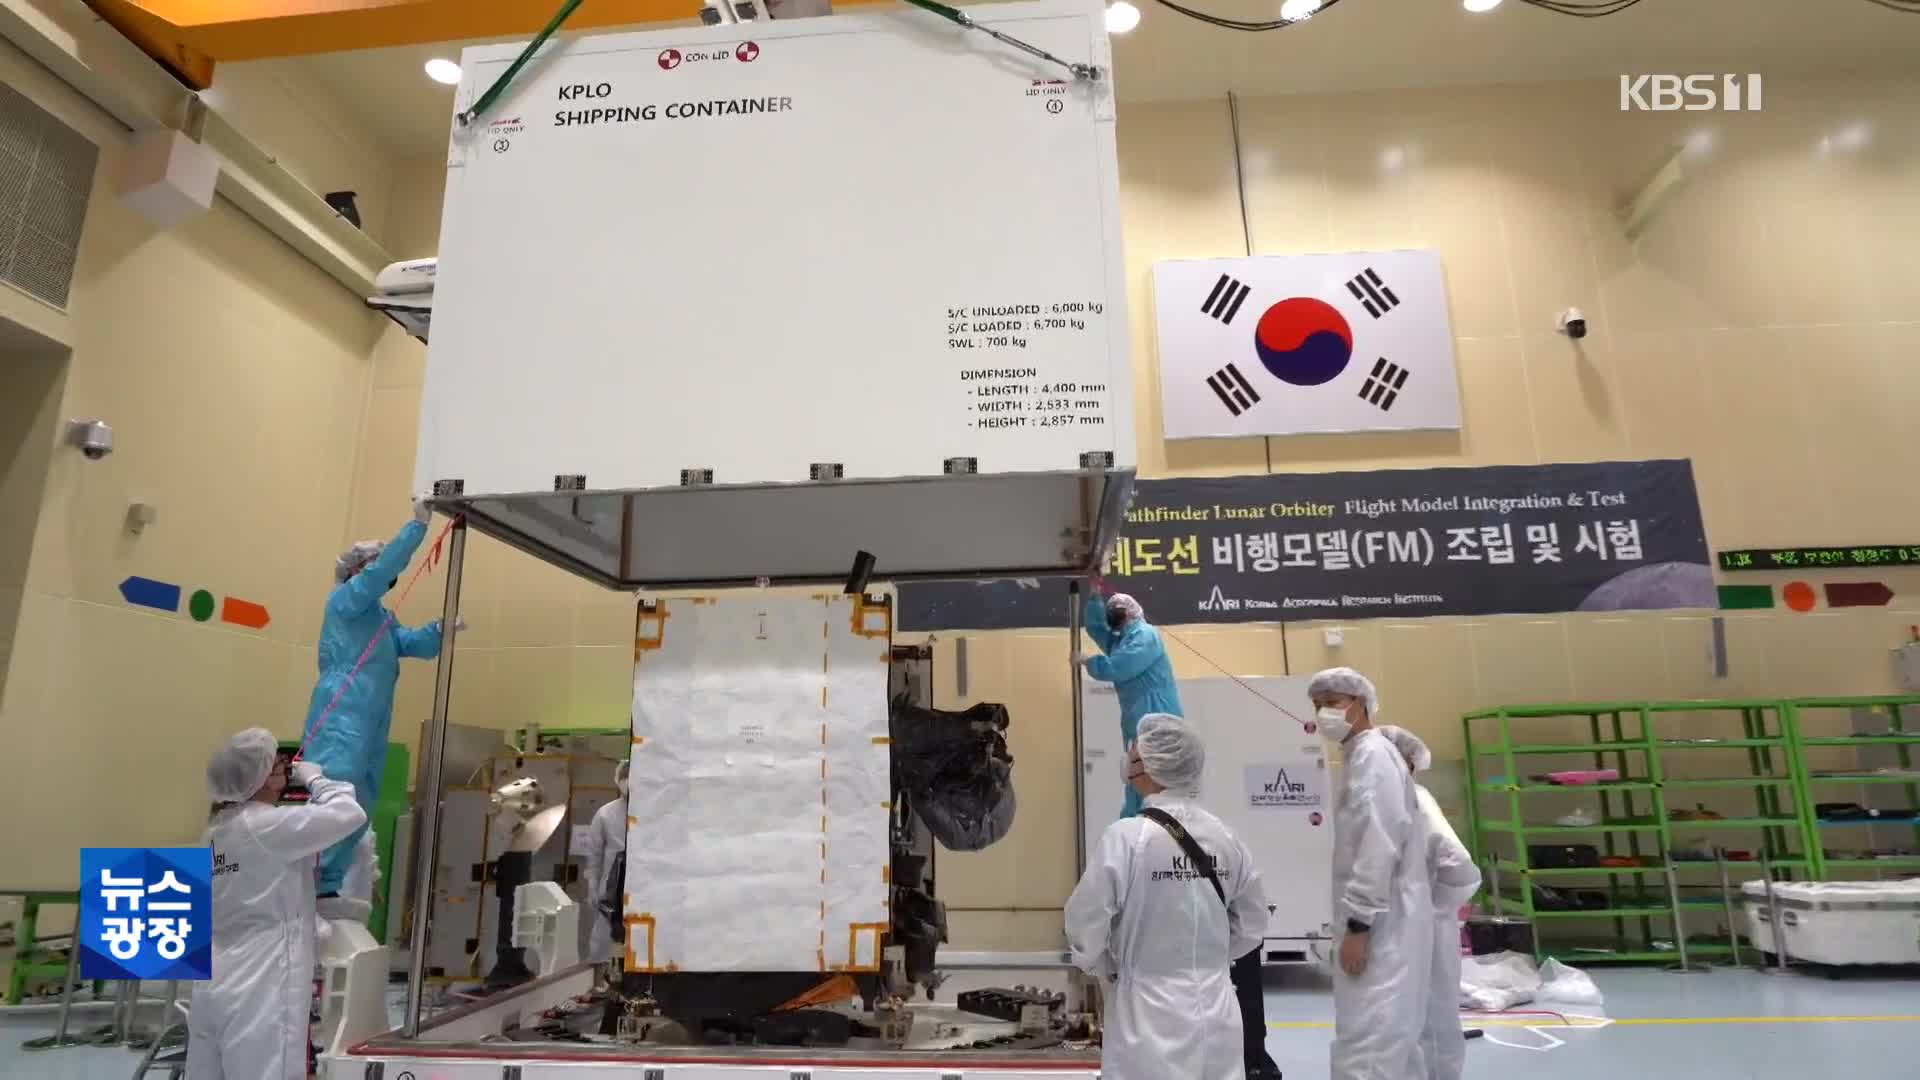 한국 세계 7번째 달 탐사국…인류의 달 탐사 역사는?